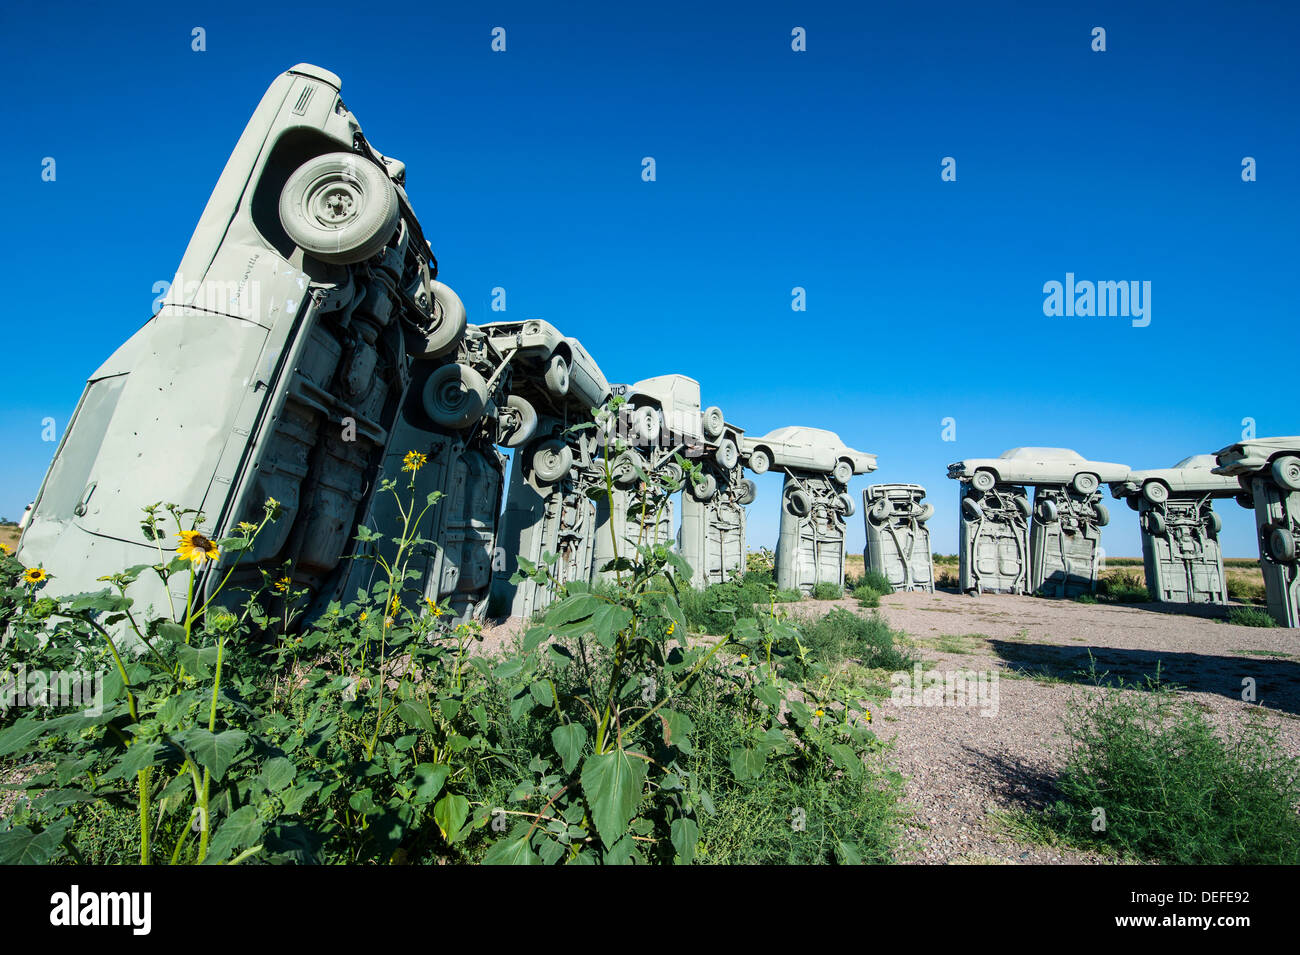 Carhenge, ein Nachbau der englischen Stonehenge, ausgefertigt von Autos in der Nähe von Allianz, Nebraska, Vereinigte Staaten von Amerika, Nordamerika Stockfoto